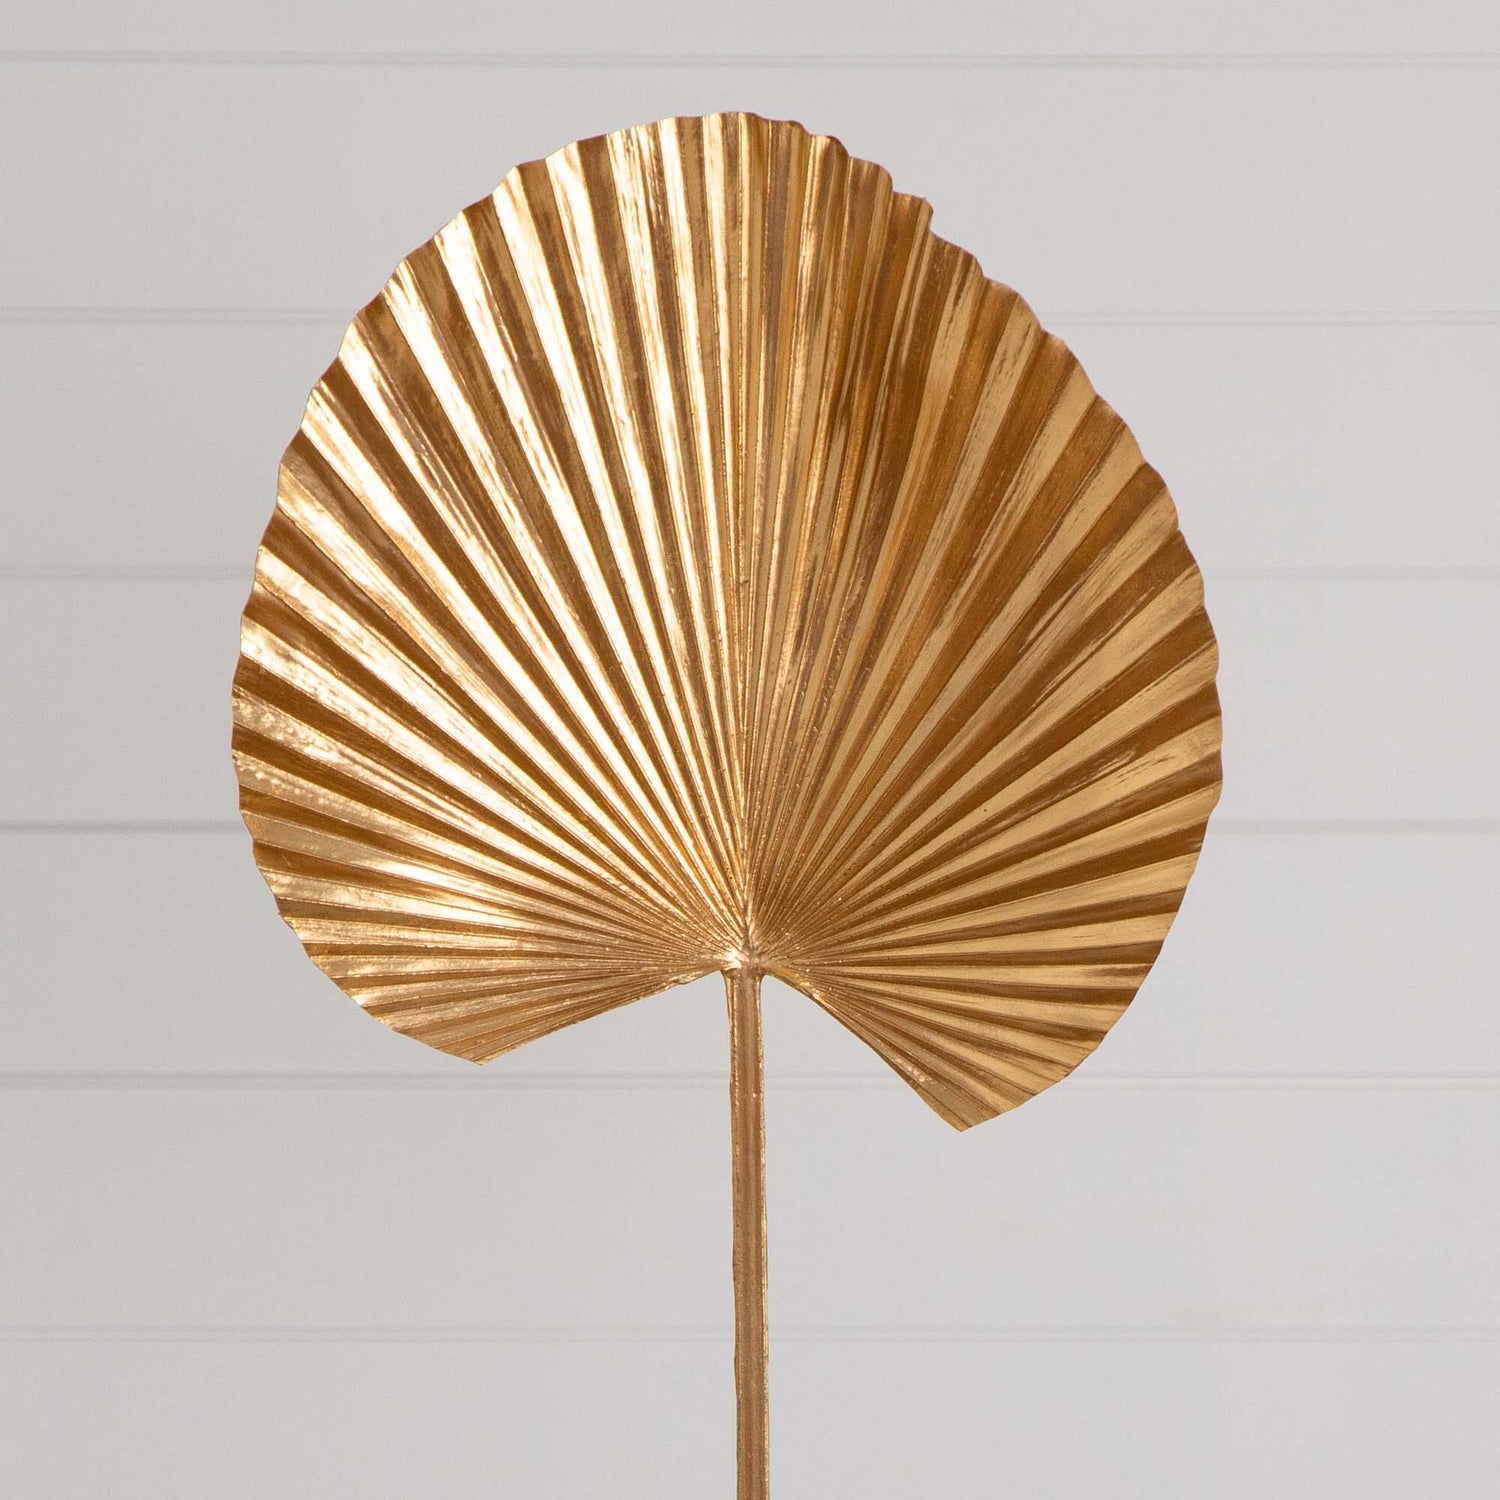 40" Artificial Golden Ruffled Fan Palm Stems - Set of 3